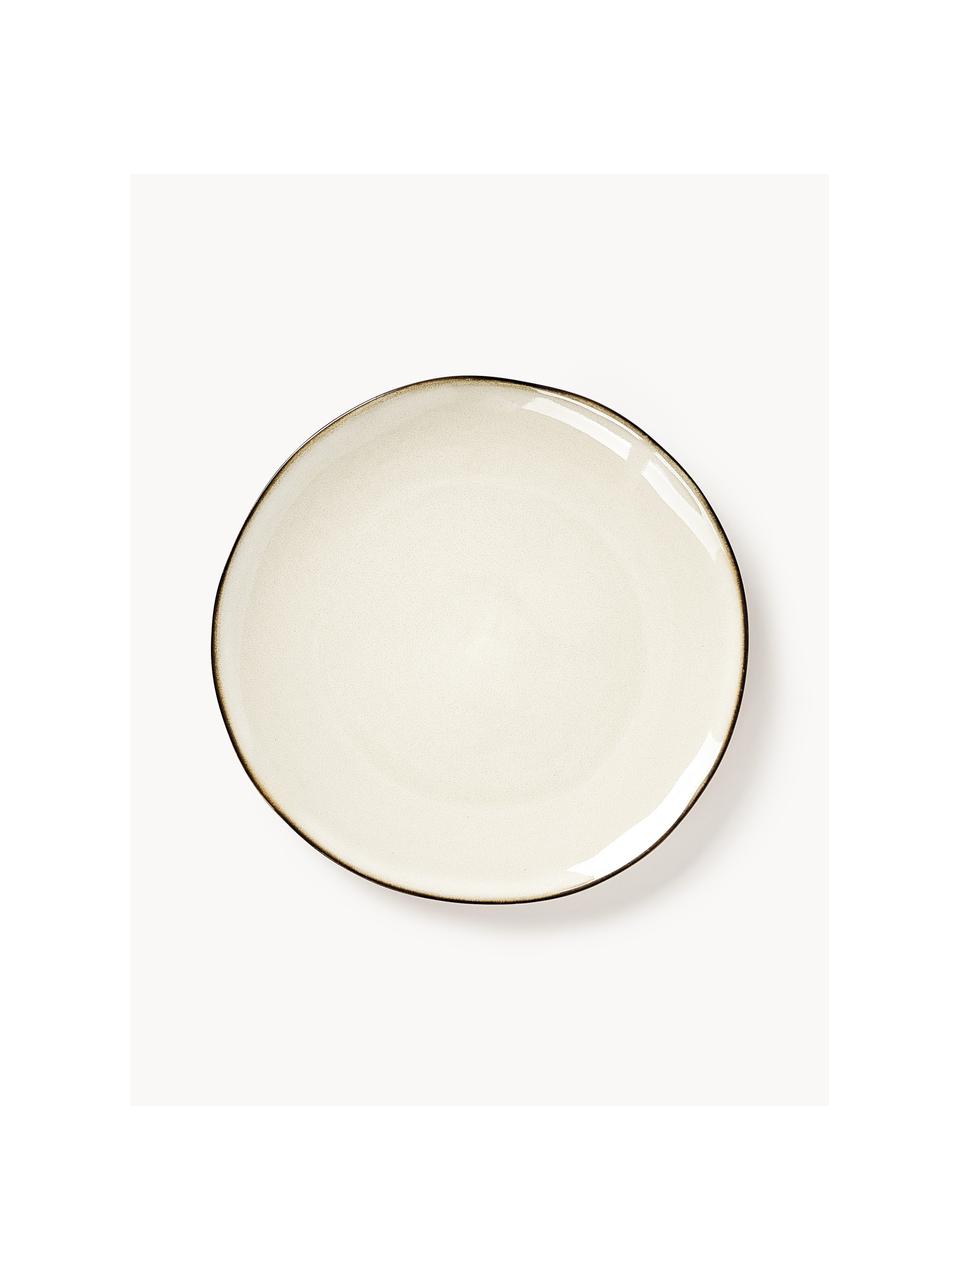 Handgemachte Frühstücksteller Thalia, 2 Stück, Steingut, Off-White mit dunklem Rand, Ø 23 x H 3 cm